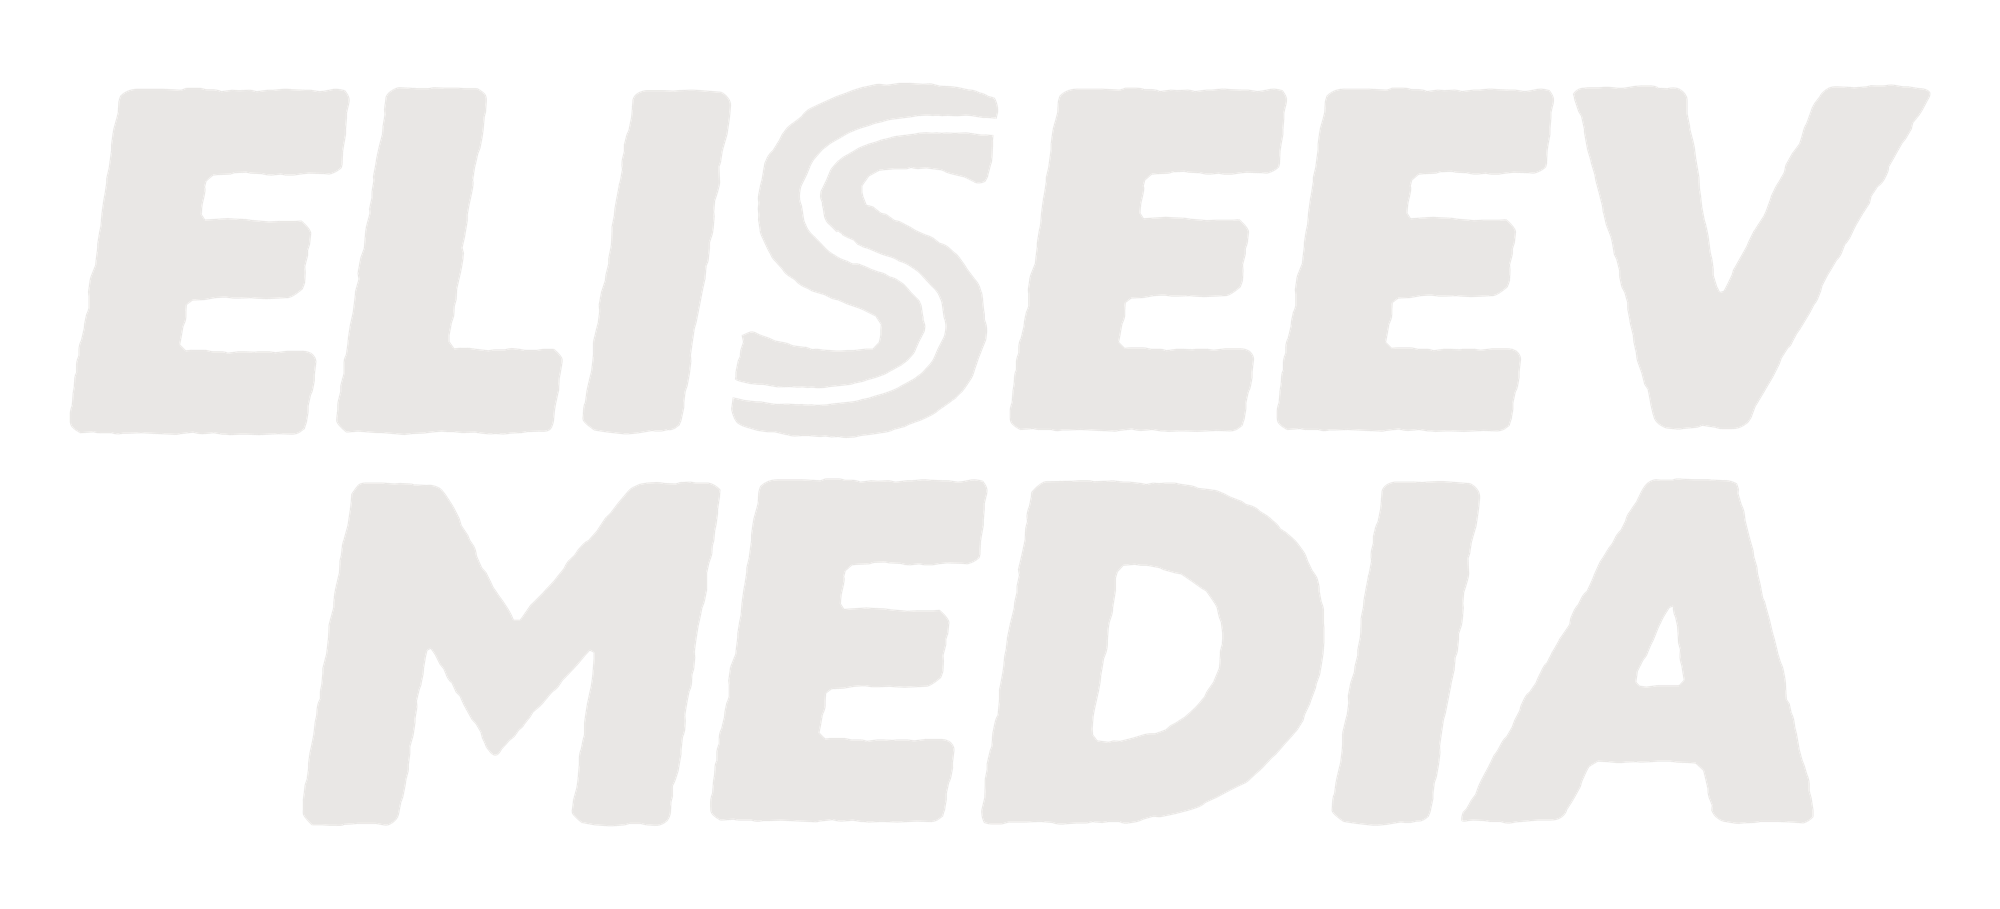 Eliseev Media